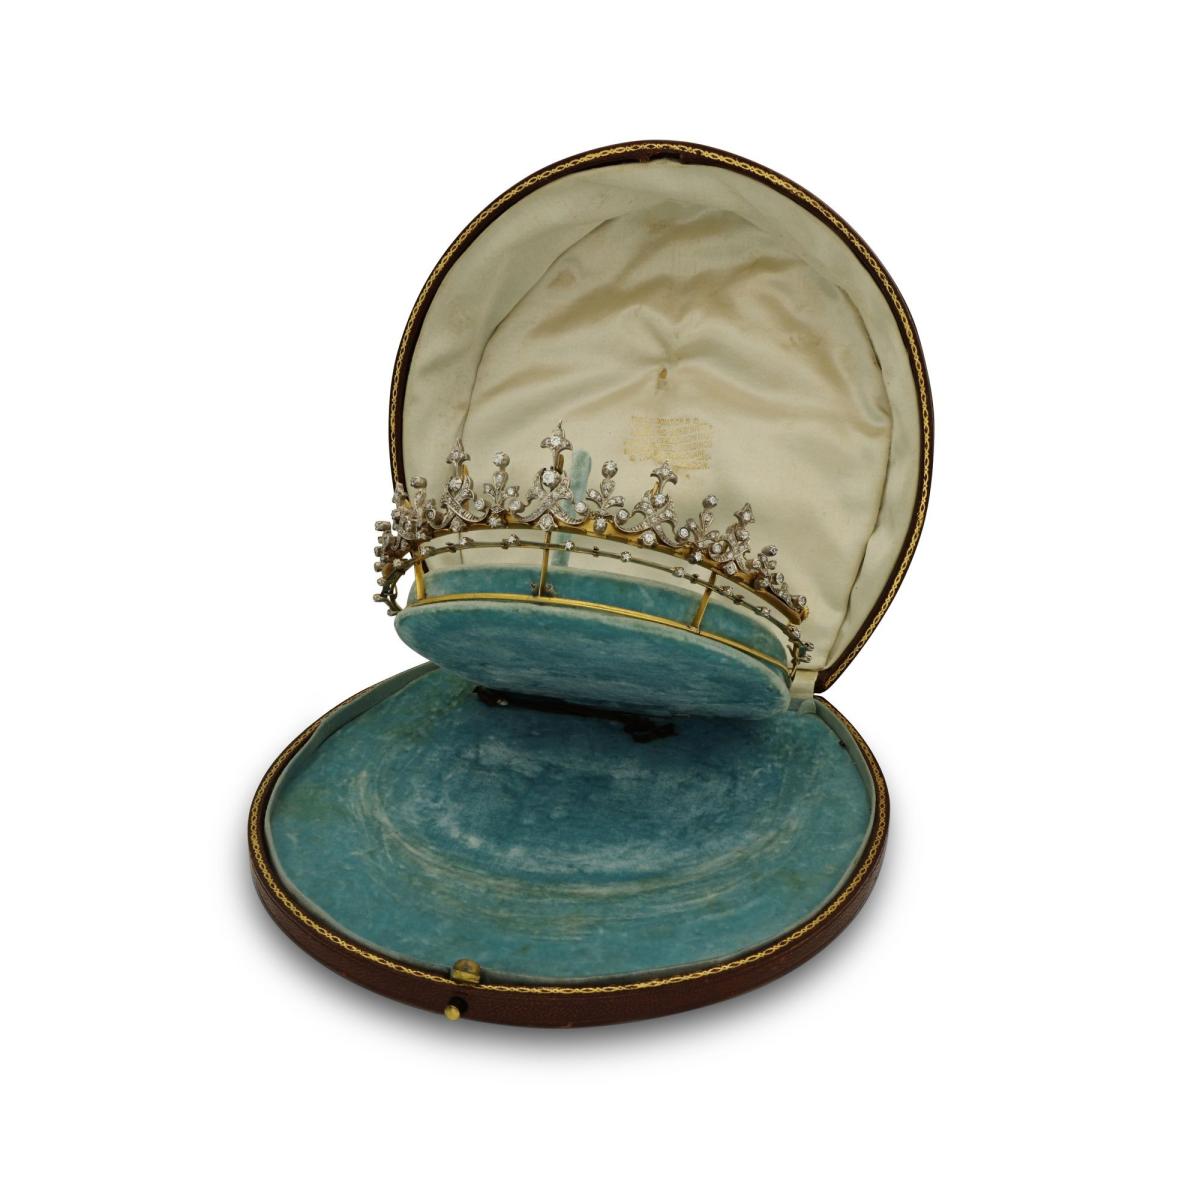 Victorian Diamond Fringe Tiara Convertible To A Necklace Circa 1880s